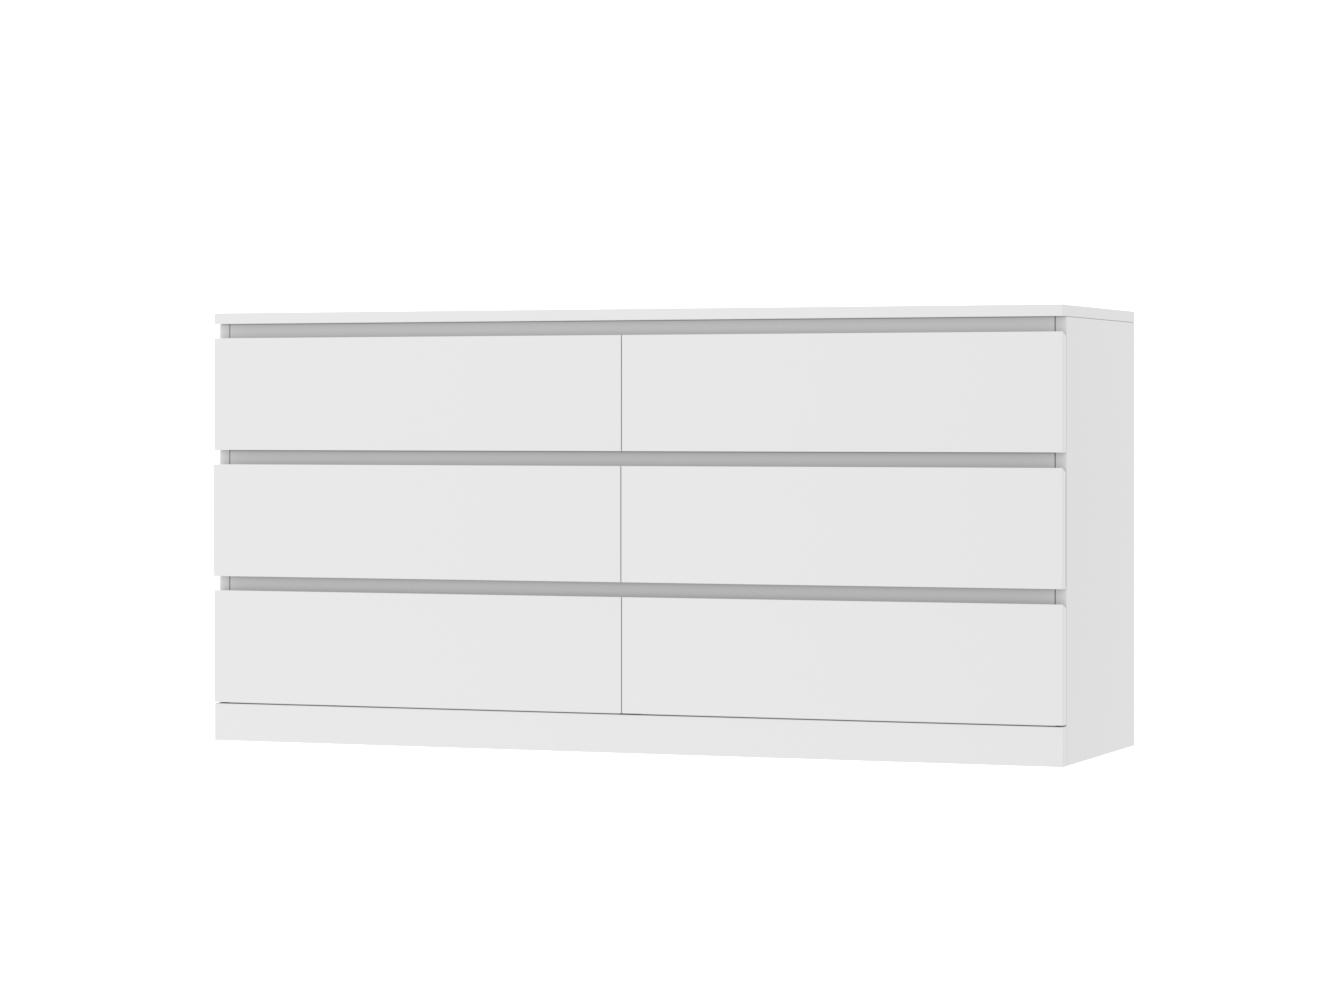 Комод Мальм 23 white ИКЕА (IKEA) изображение товара